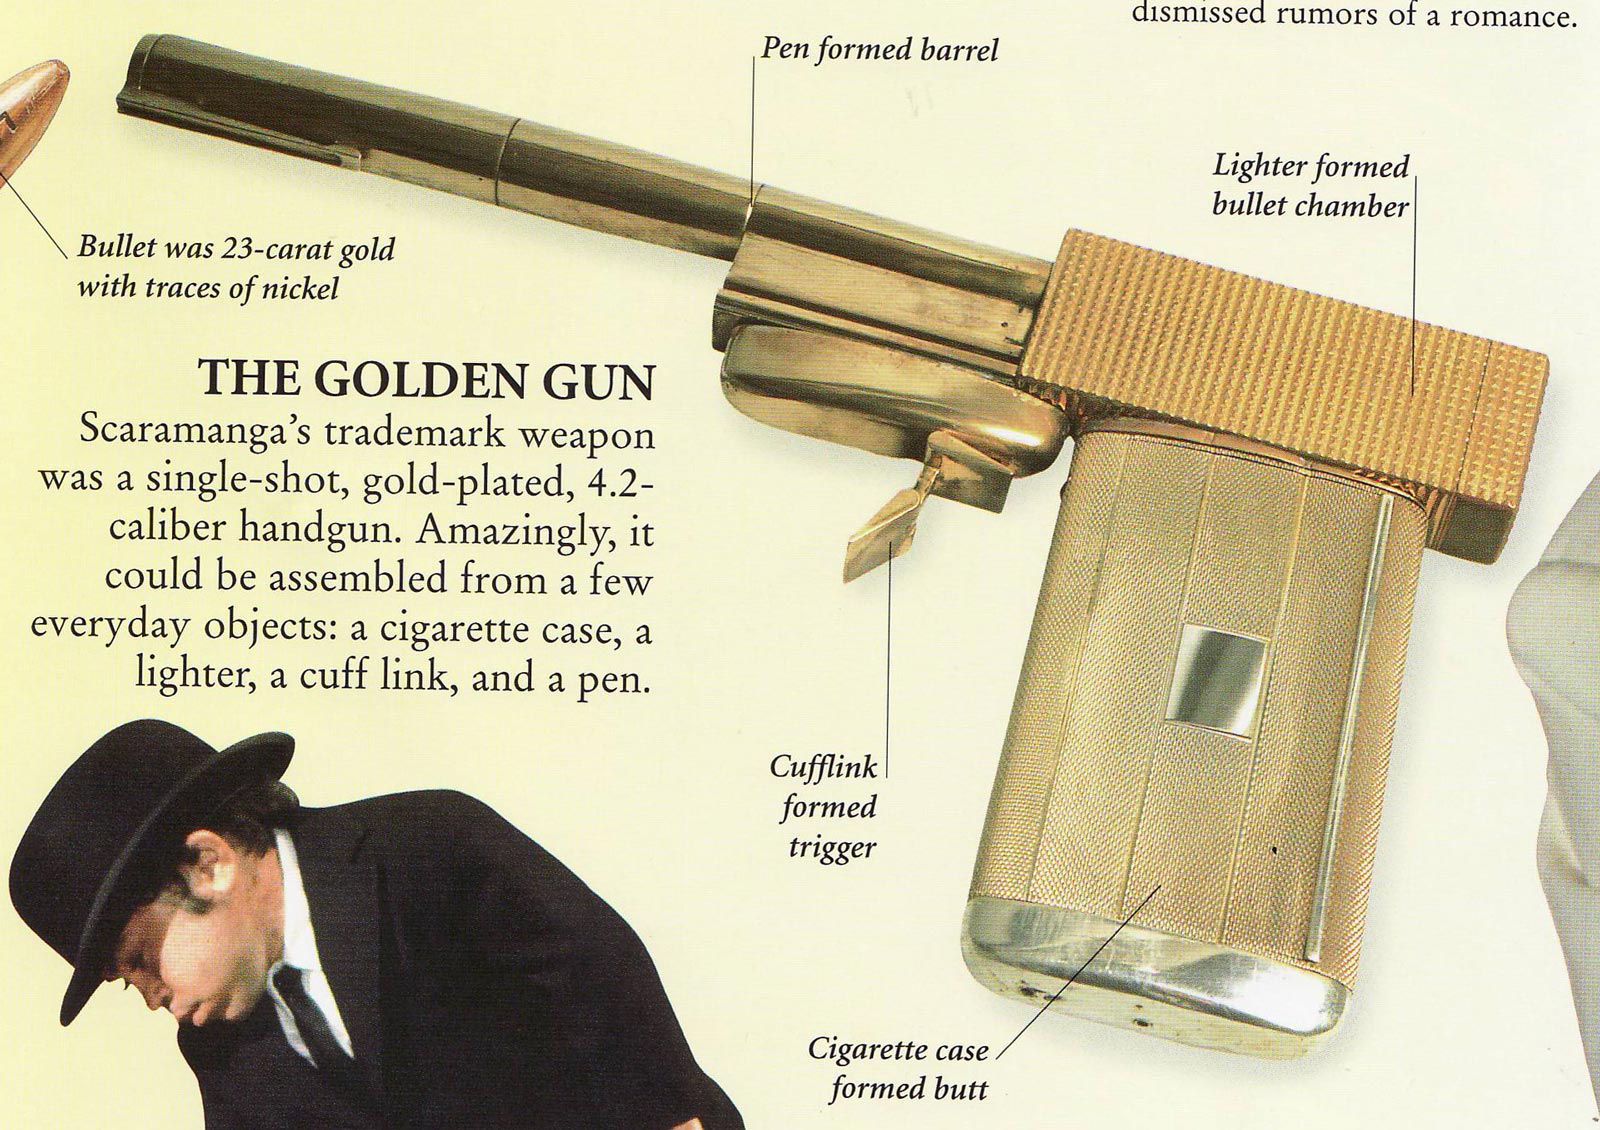 james-bond-secret-world-007-golden-gun-x1600.jpg